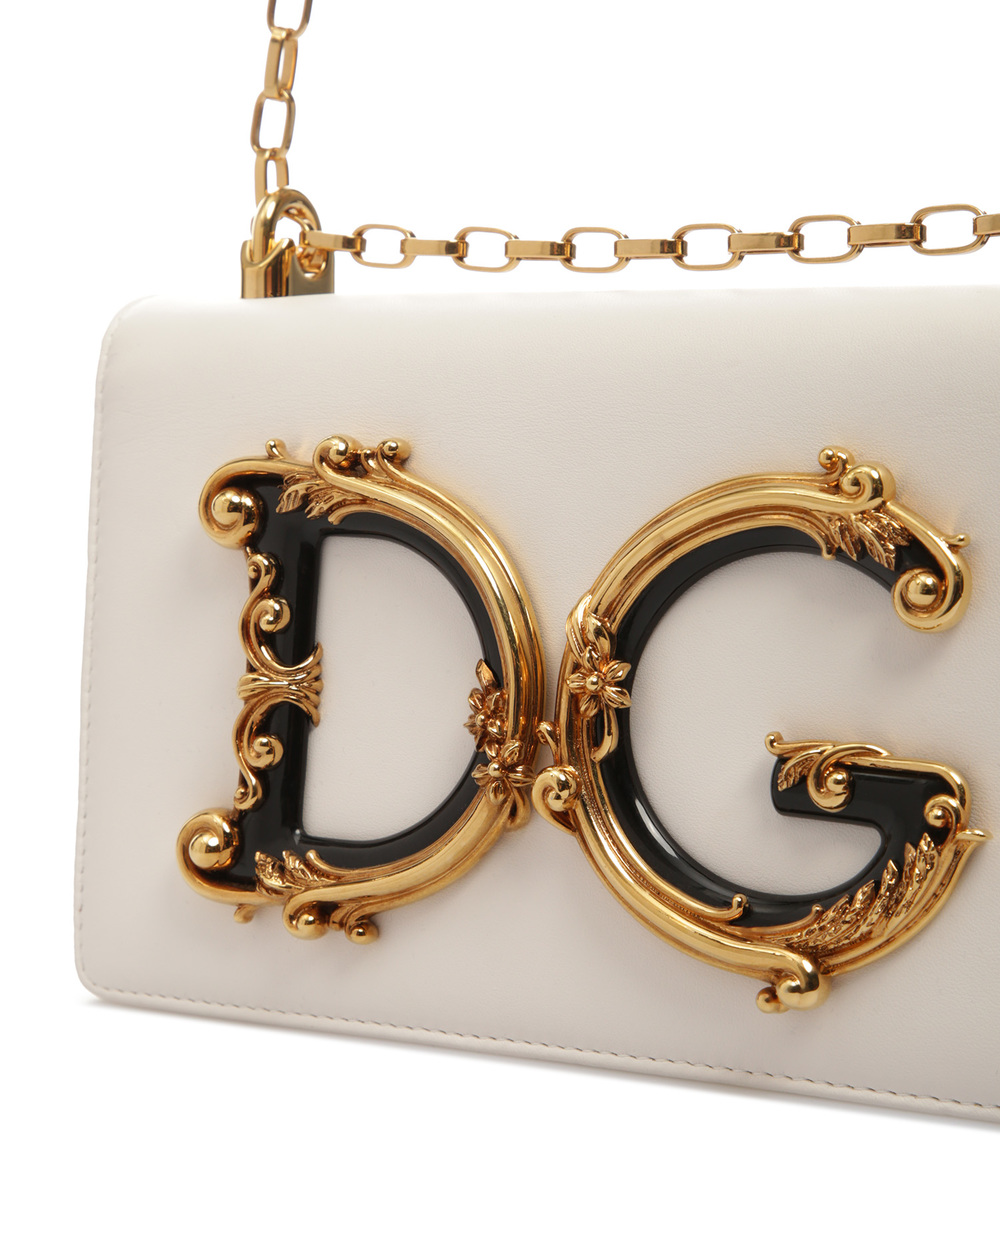 Кожаная cумка DG Girls Medium Dolce&Gabbana BB6498-AZ801, белый цвет • Купить в интернет-магазине Kameron